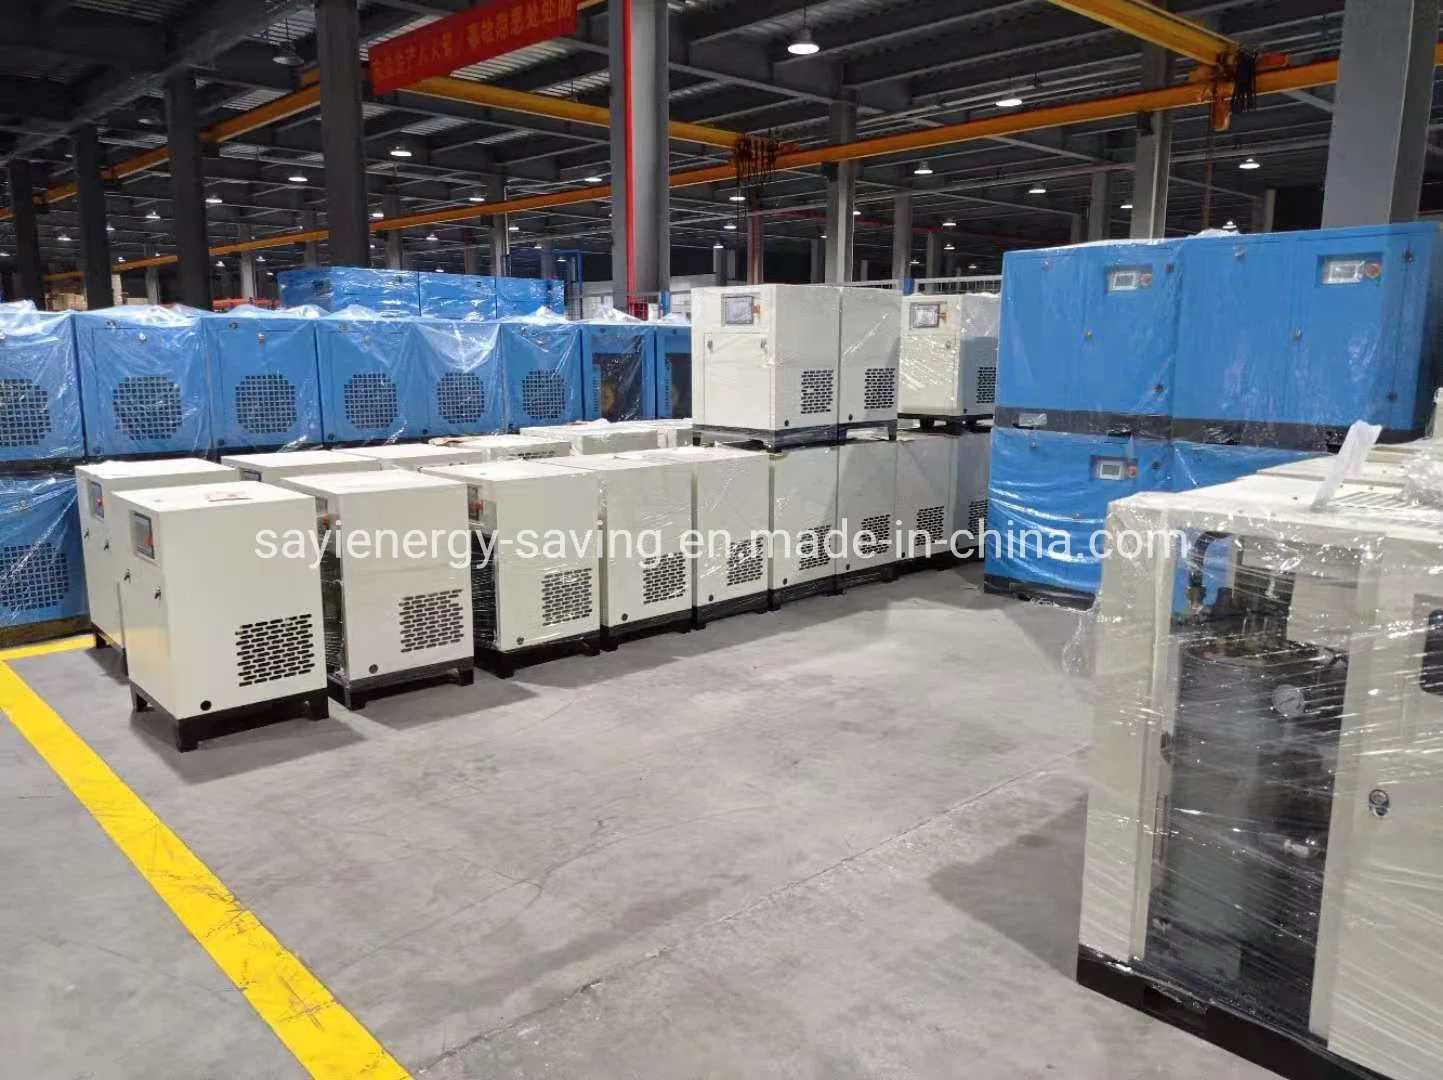 China Fabricante de venda directa de Energia pneumática Permant Parafuso Magneto Comressor ar 30HP aprovado pela CE CA Industrial Compressor de Ar único de dois estágios